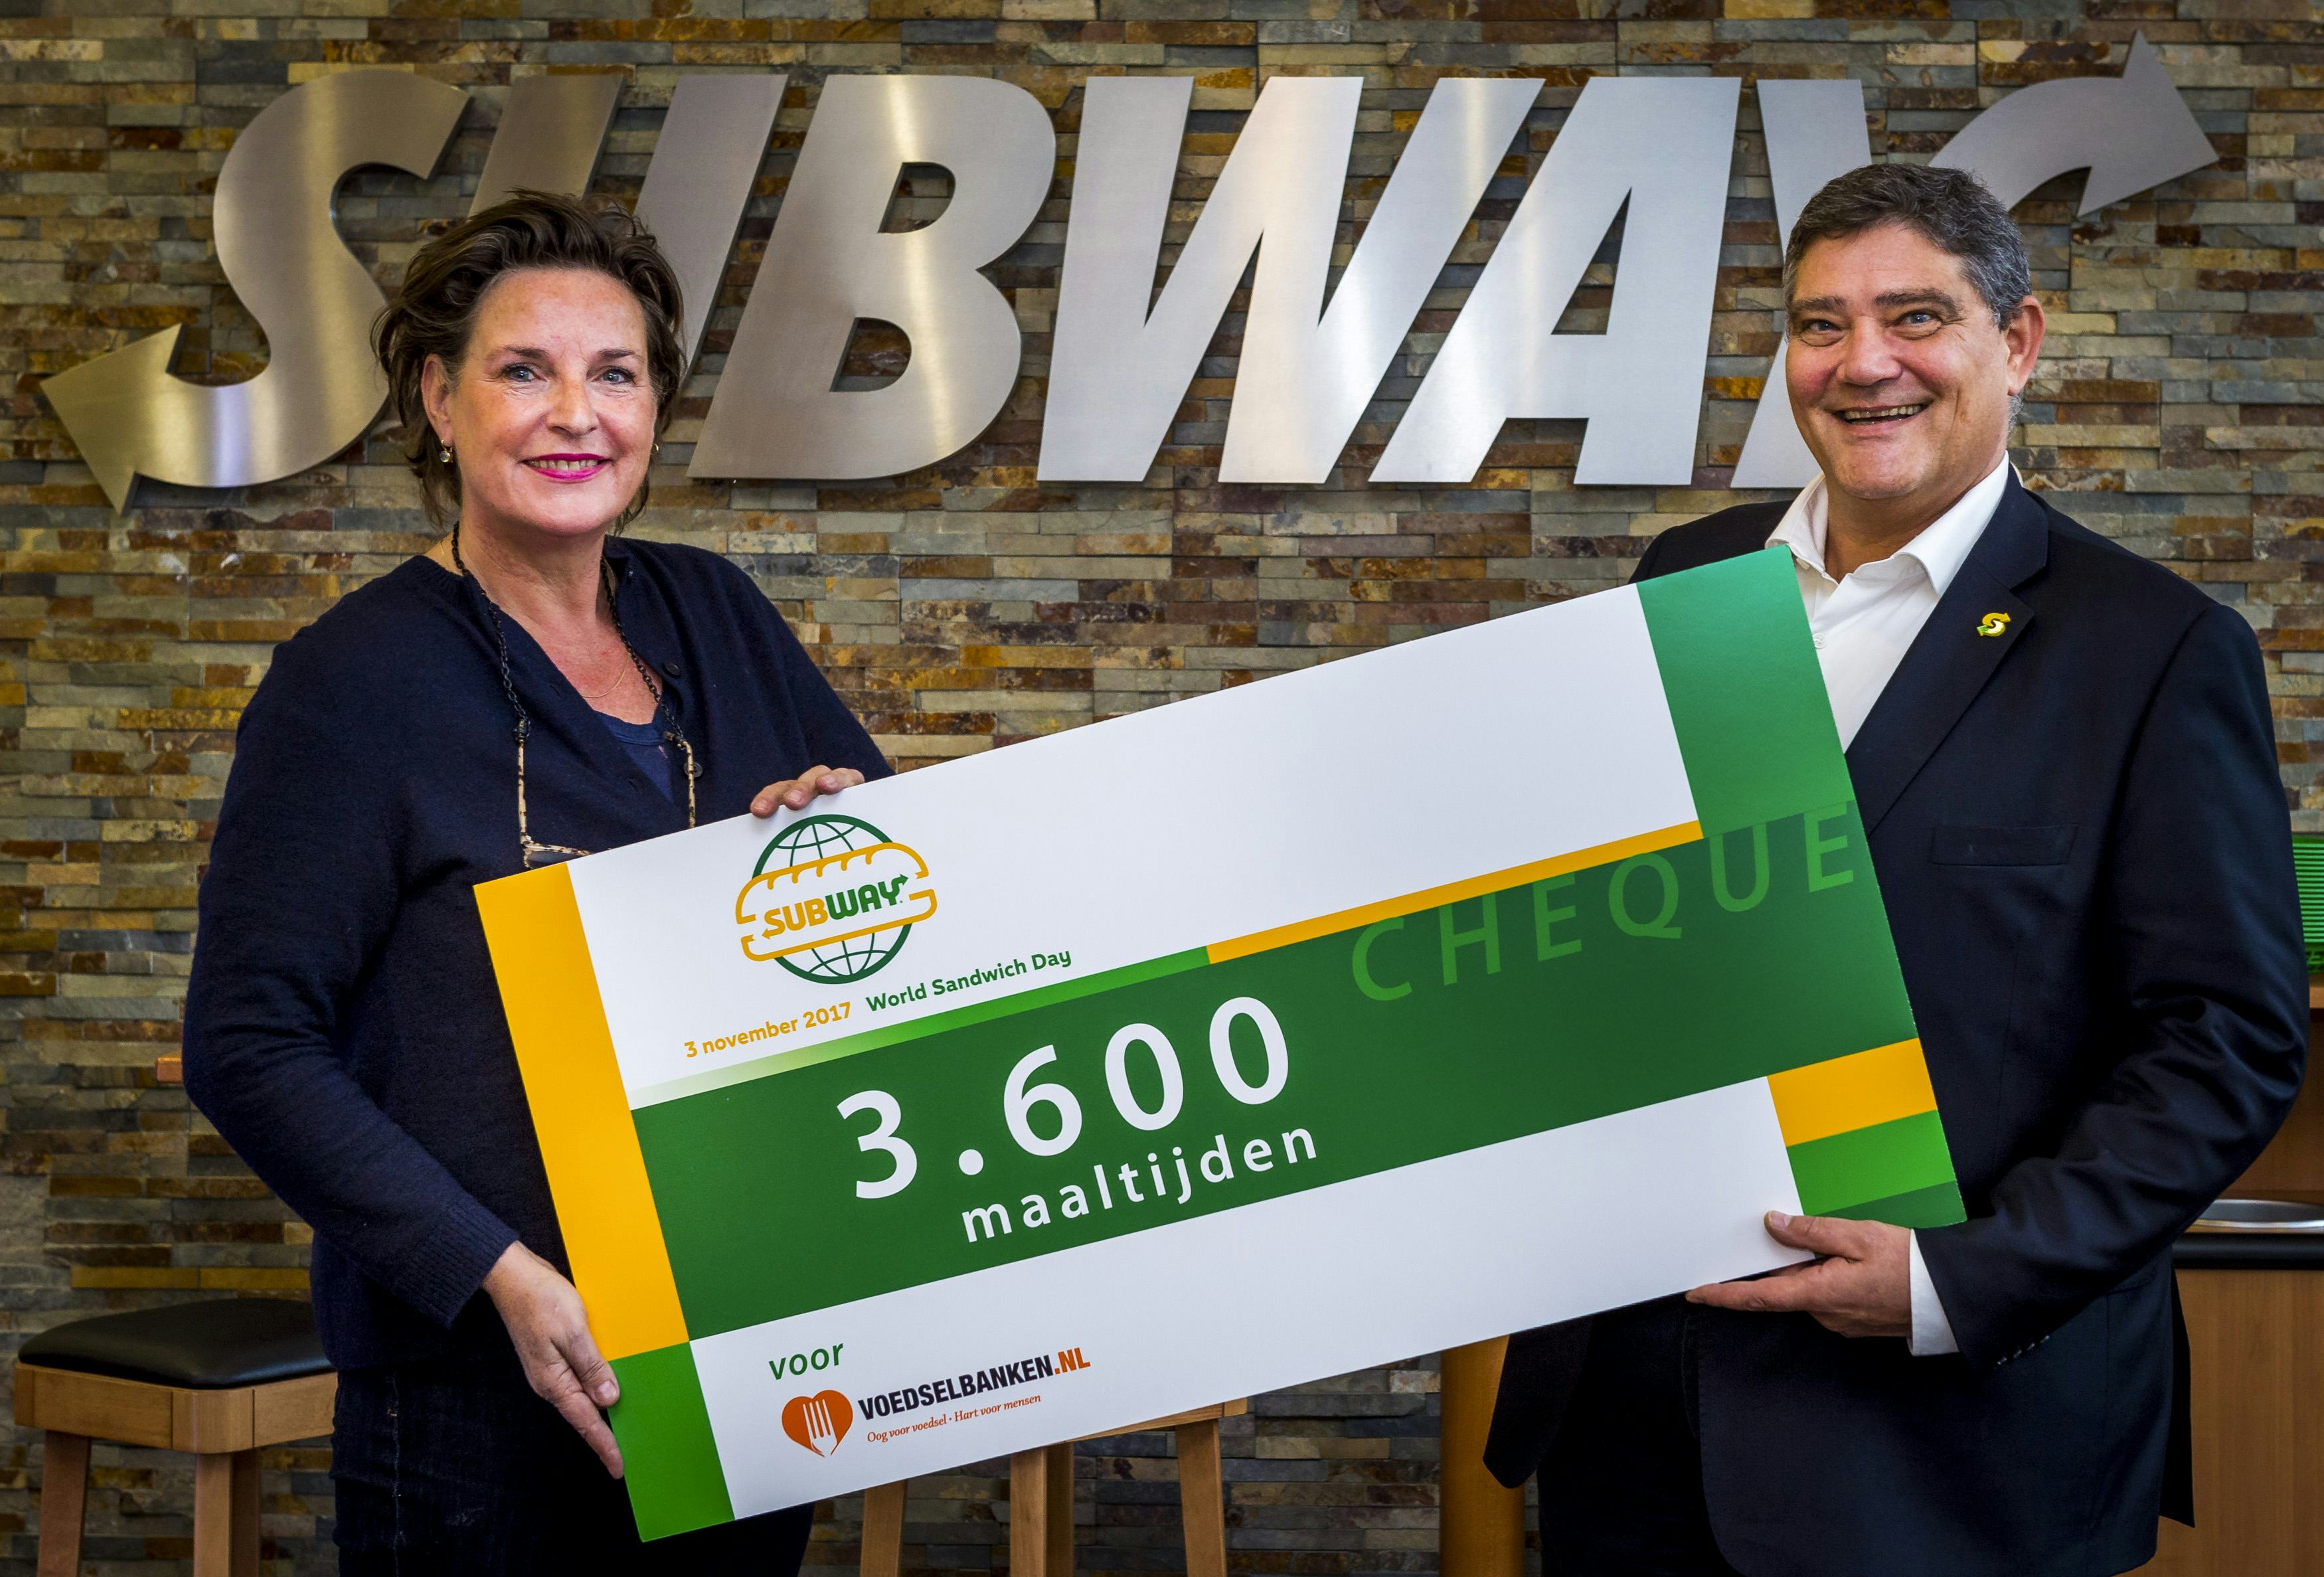 Joost Labadie van Subway Nederland overhandigt een cheque ter waarde van 3600 maaltijden aan Caroline van der Graaf van Voedselbanken Nederland.